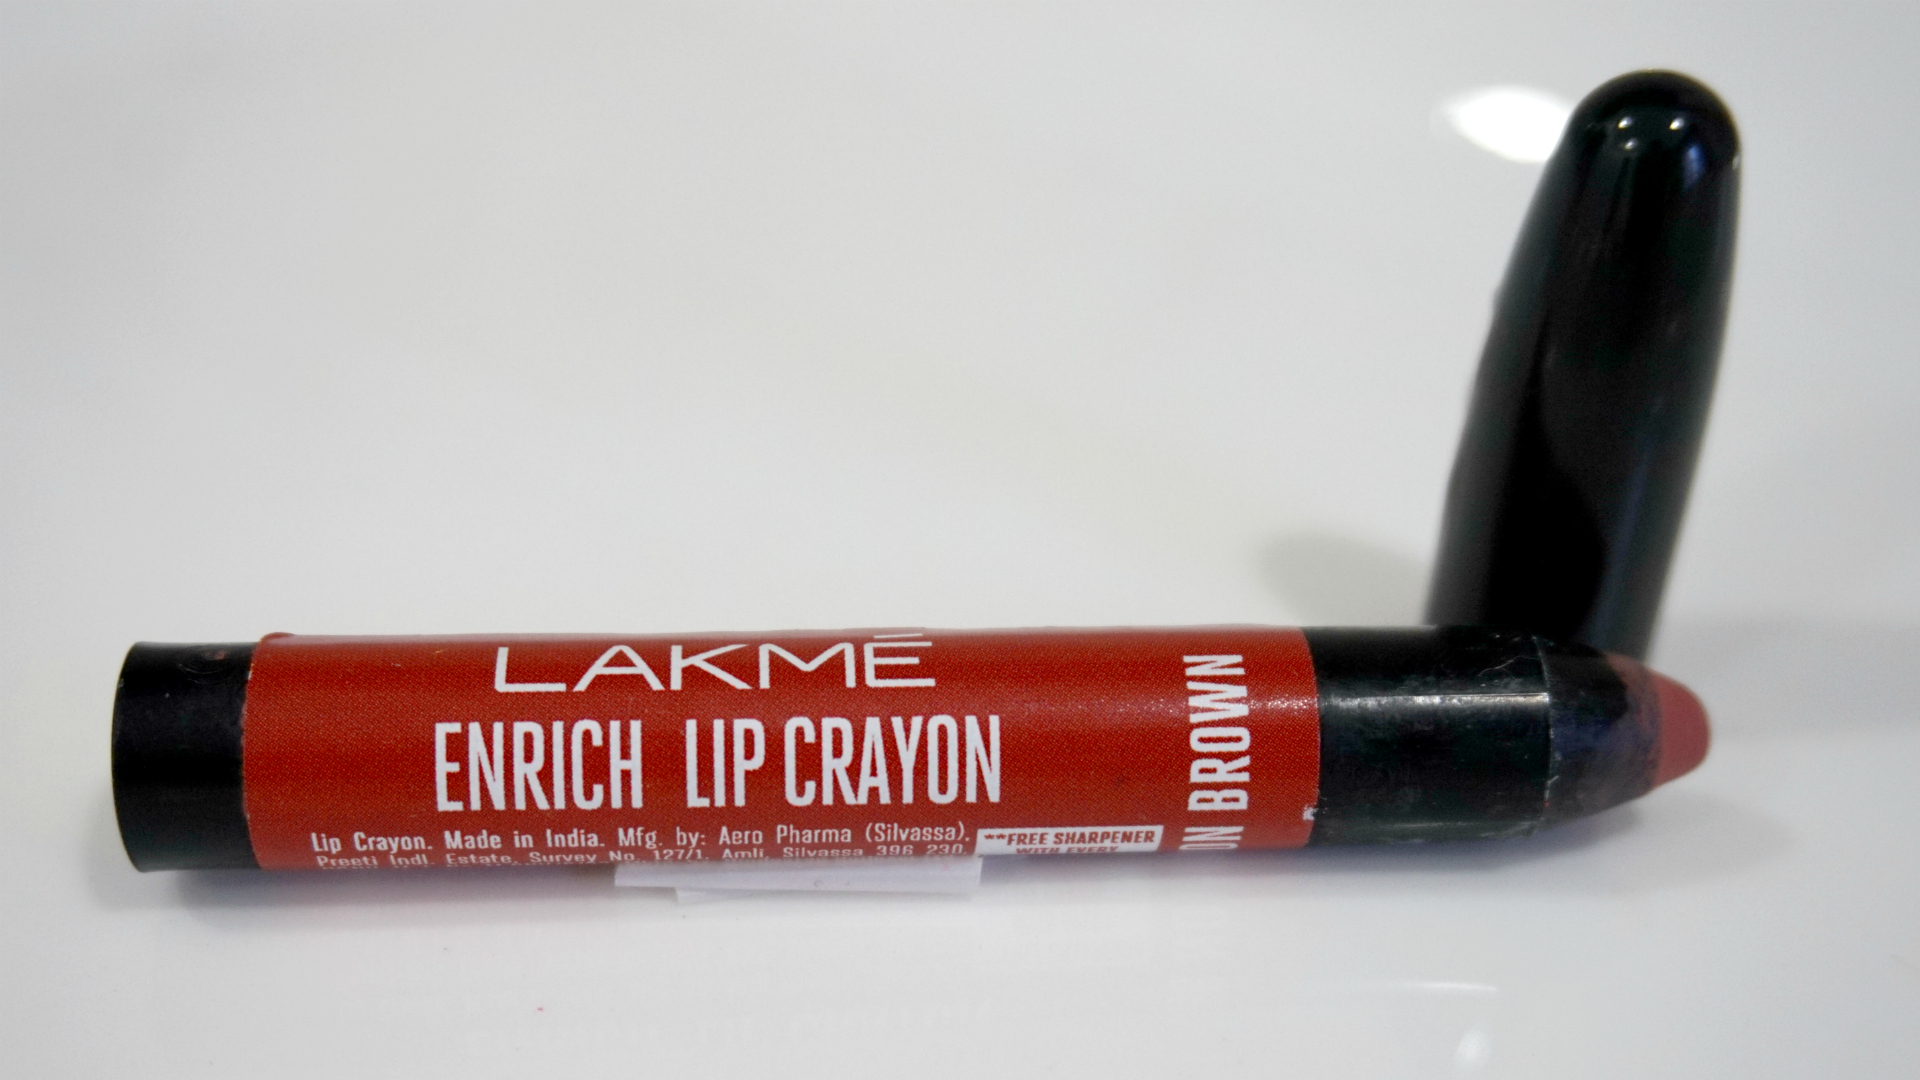 Lakme Enrich Lip Crayons Review